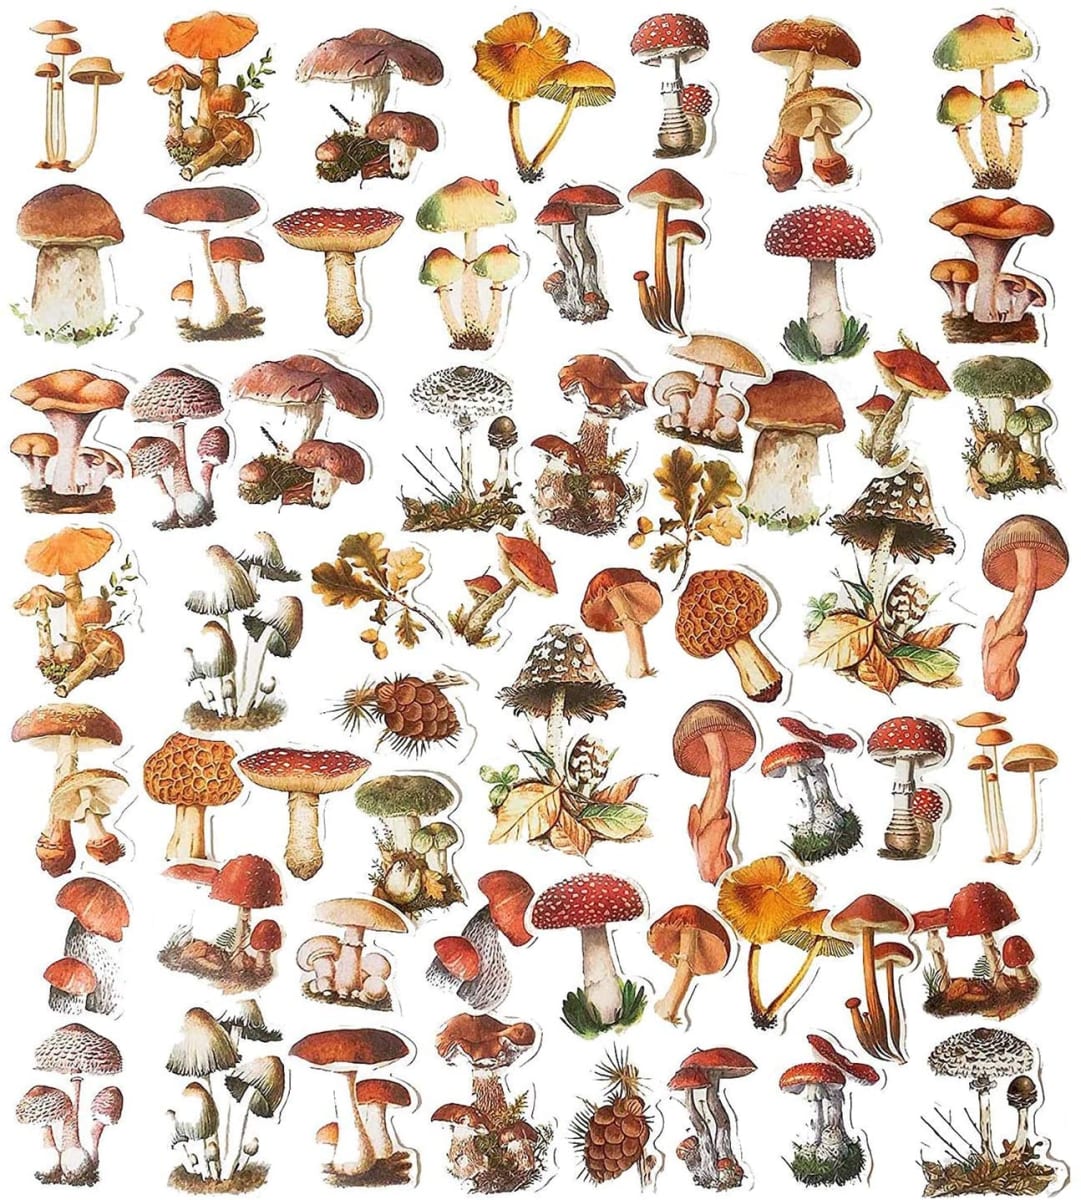 Vintage style mushroom wash stickers